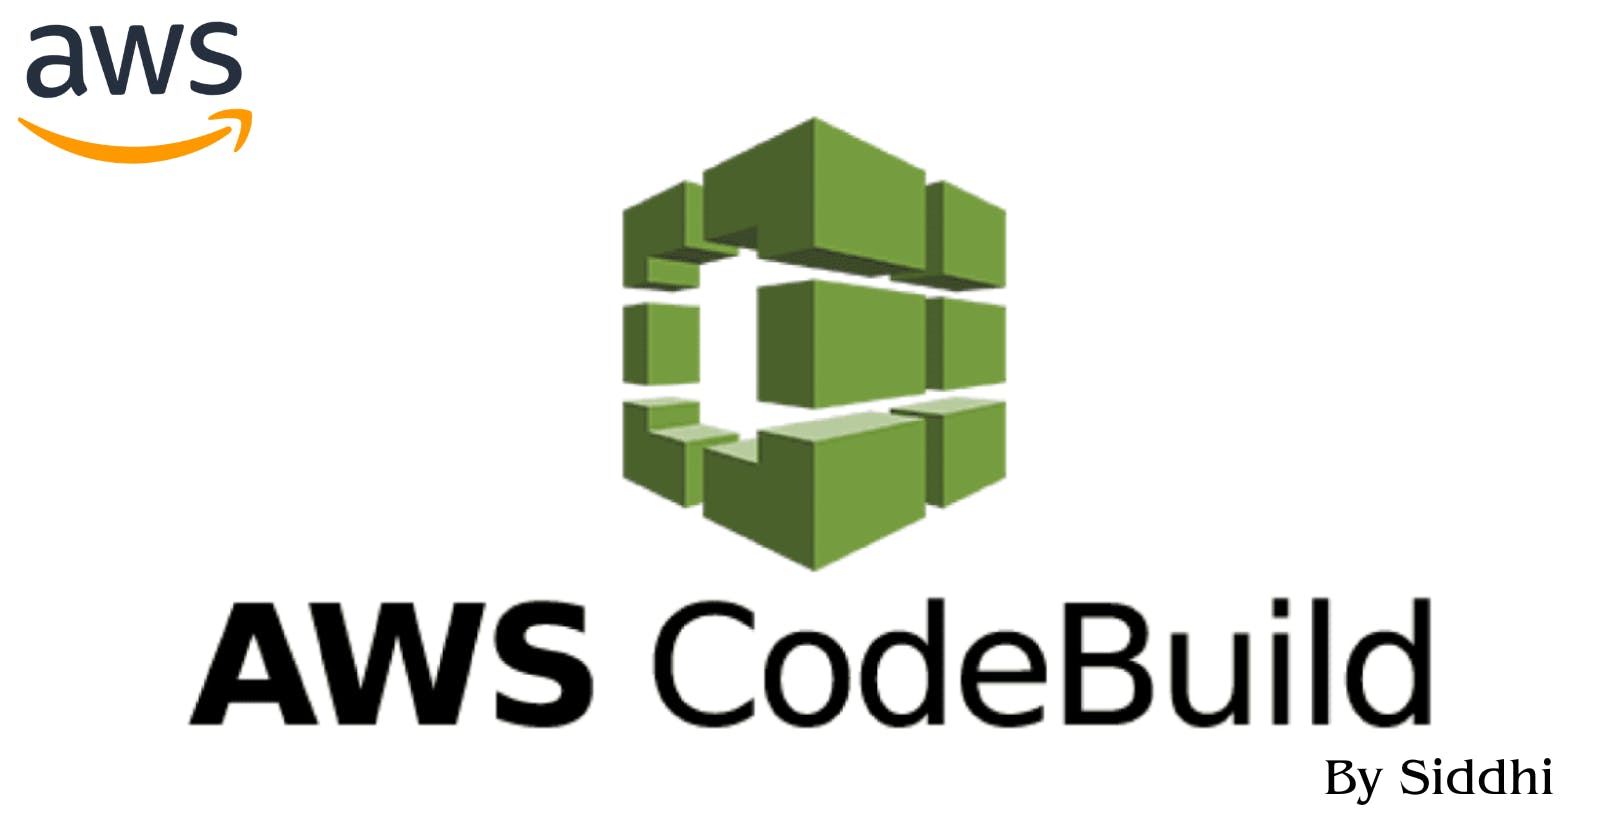 AWS CodeBuild